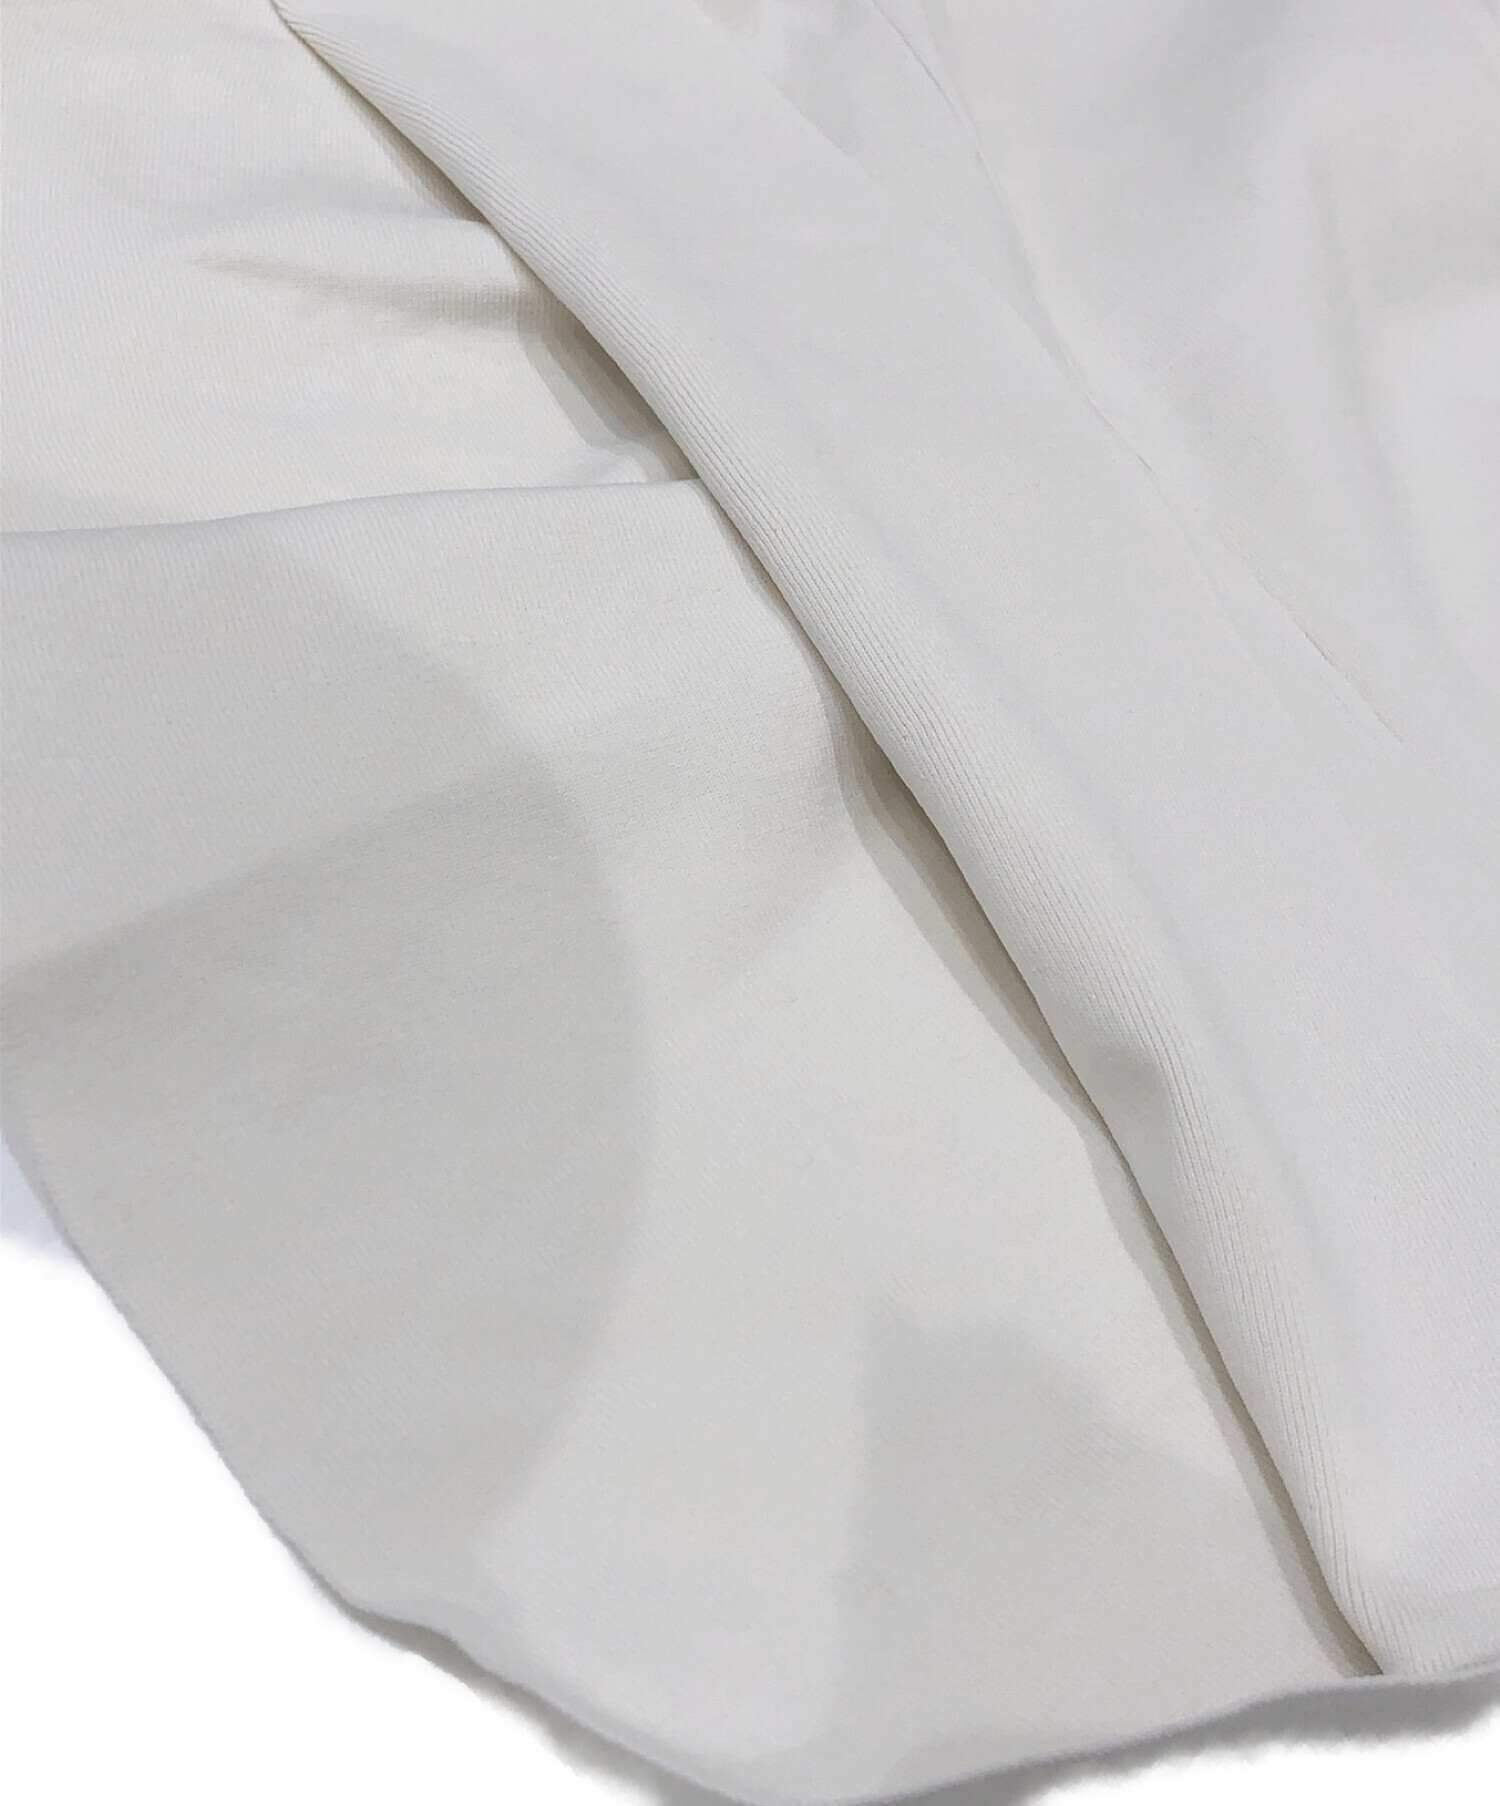 JUSGLITTY (ジャスグリッティー) ペプラムニットプルオーバーシャツ オフホワイト サイズ:2 未使用品